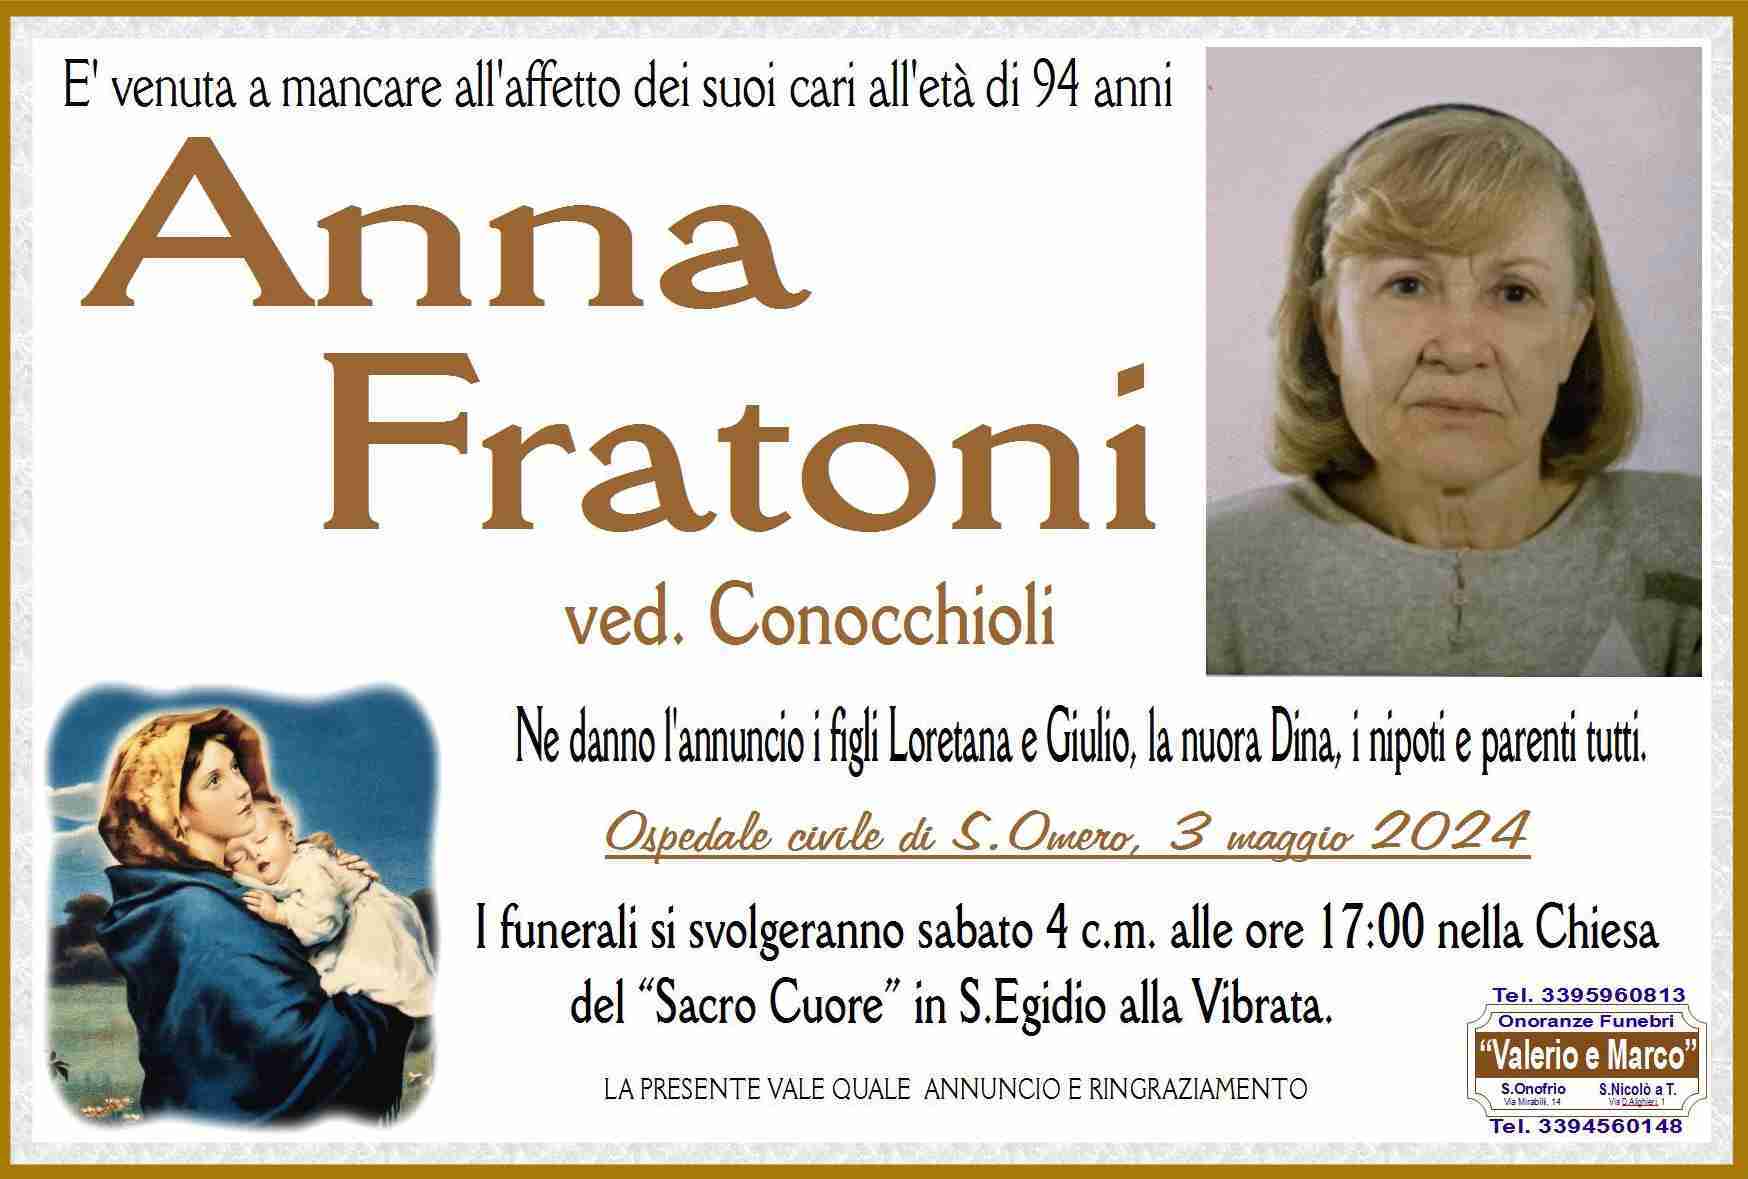 Anna Fratoni